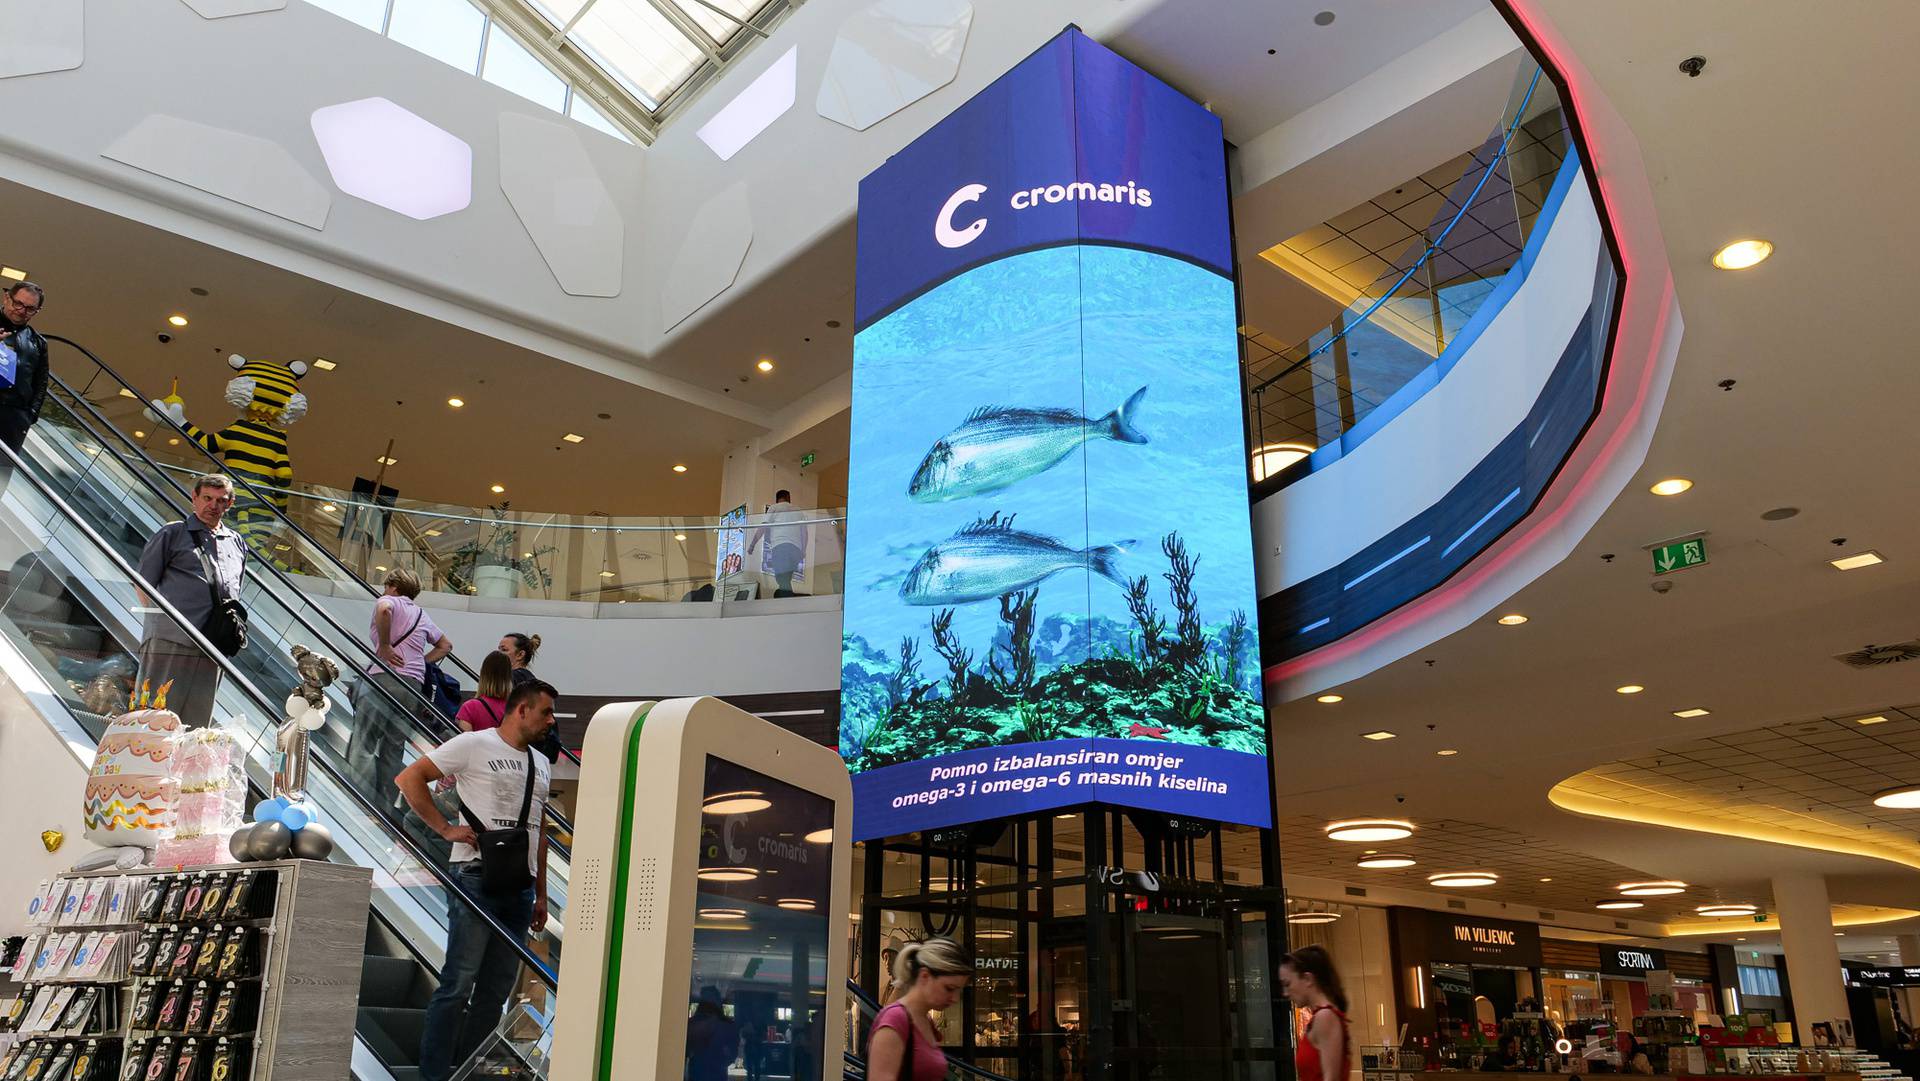 Orada i brancin zaplivali u najvećem zagrebačkom 3D akvariju